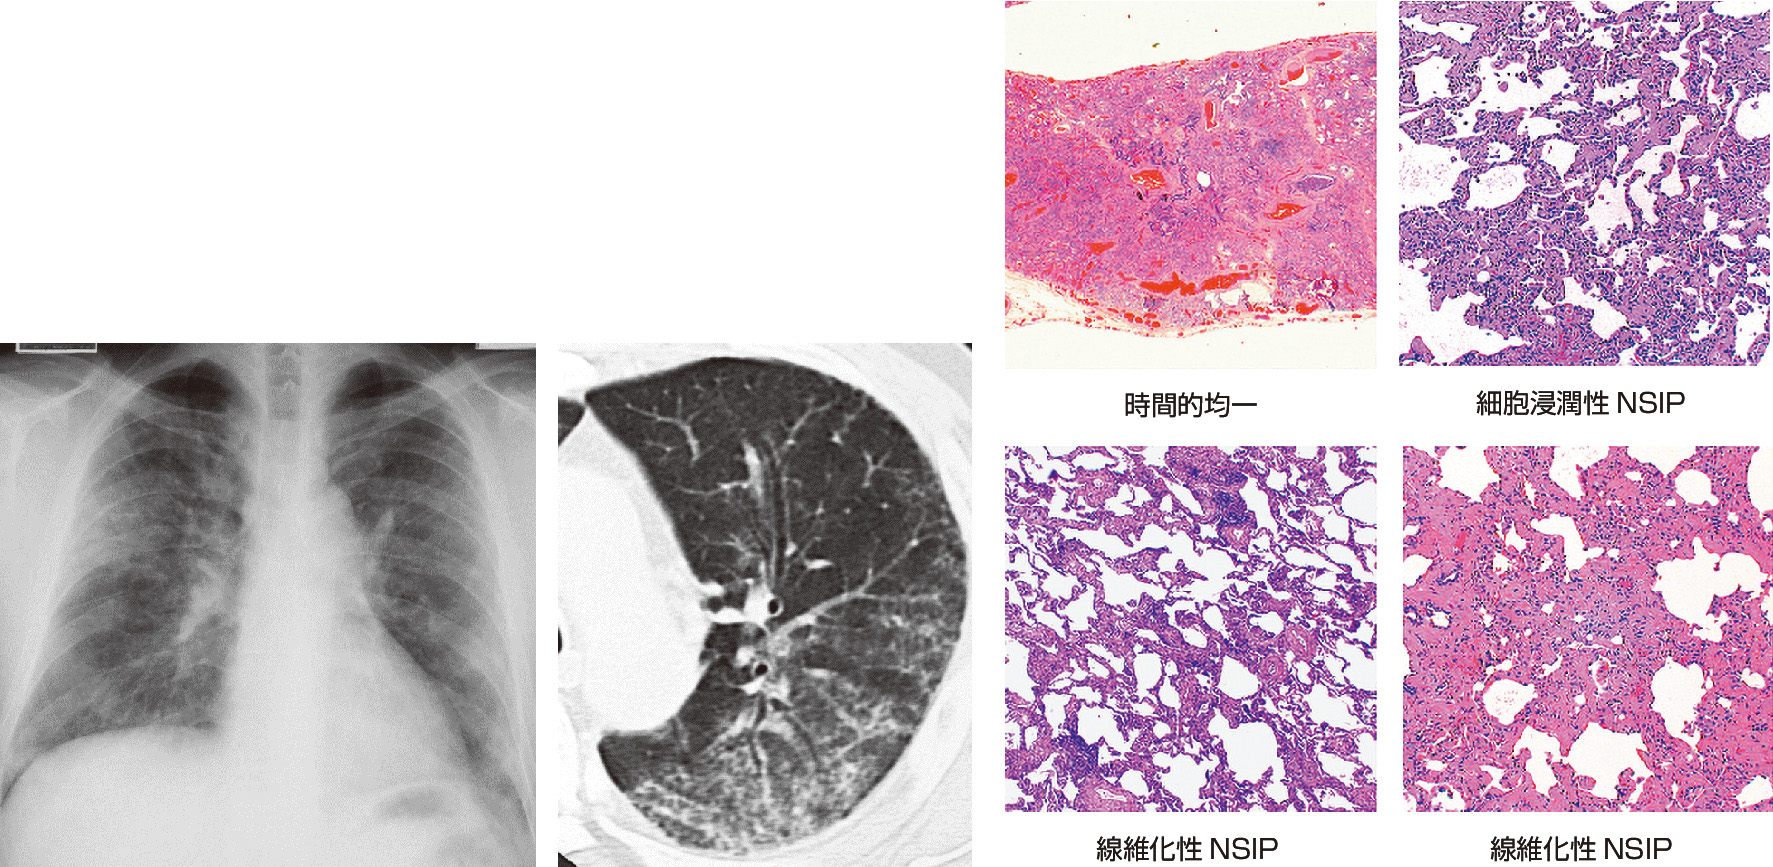 ⓔ図10-5-2　NSIP/NSIPの画像と病理所見 (福岡順也：臨床画像，2004; 20: 6–15より作成) 両側肺野にすりガラス，網状影，牽引性気管支拡張が認められる．病理像は小葉内にびまん性に分布し，細胞浸潤性NSIPでは間質にリンパ球，形質細胞がびまん性に浸潤する．線維化性NSIPではびまん性に時相の一致した線維化が認められる．